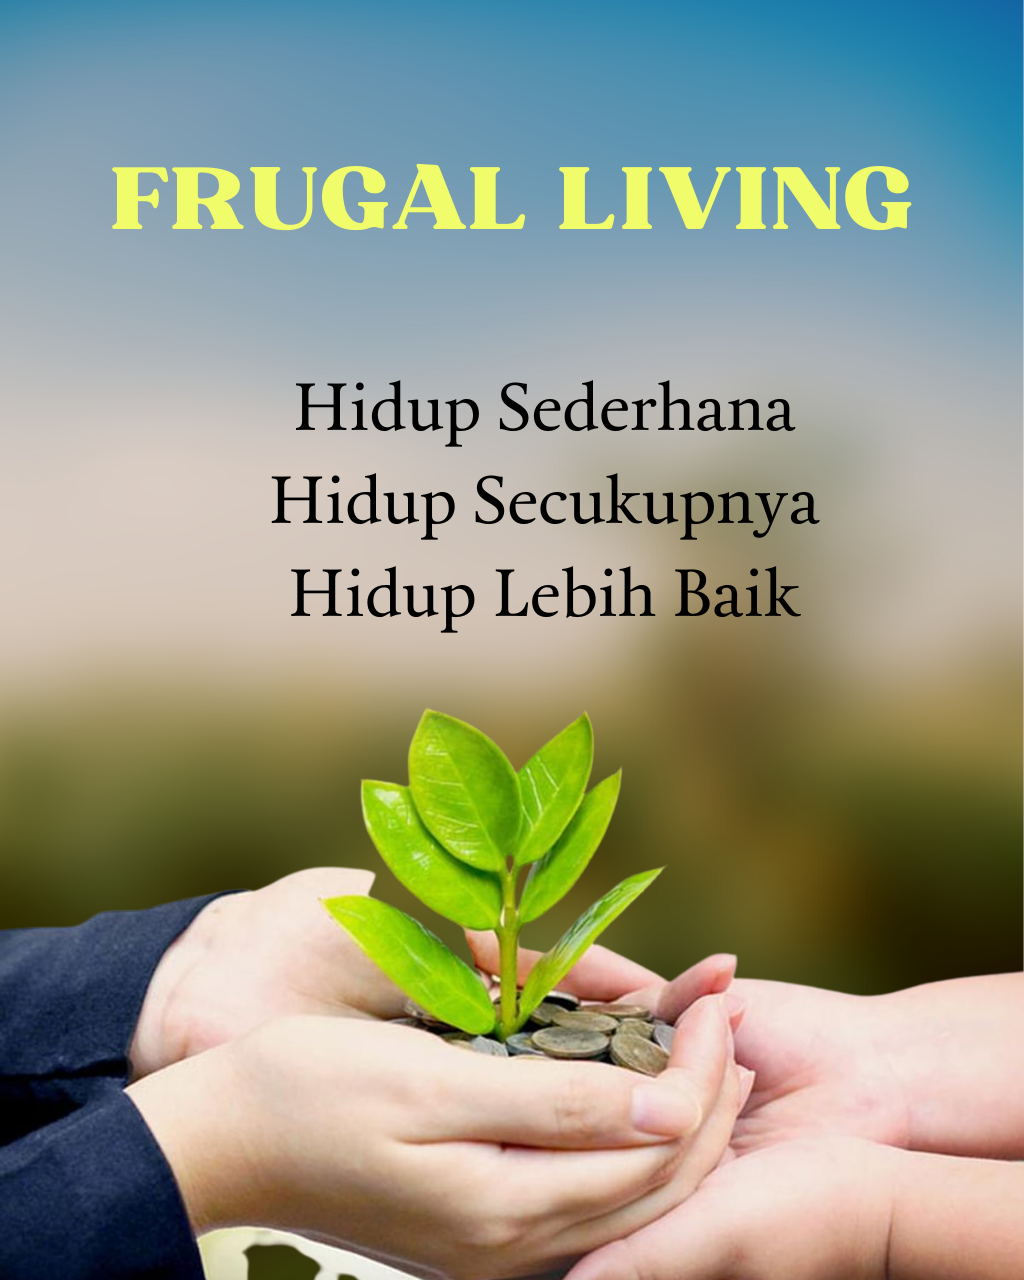 Frugal Living, Gaya Hidup yang Patut Ditiru Oleh ASN